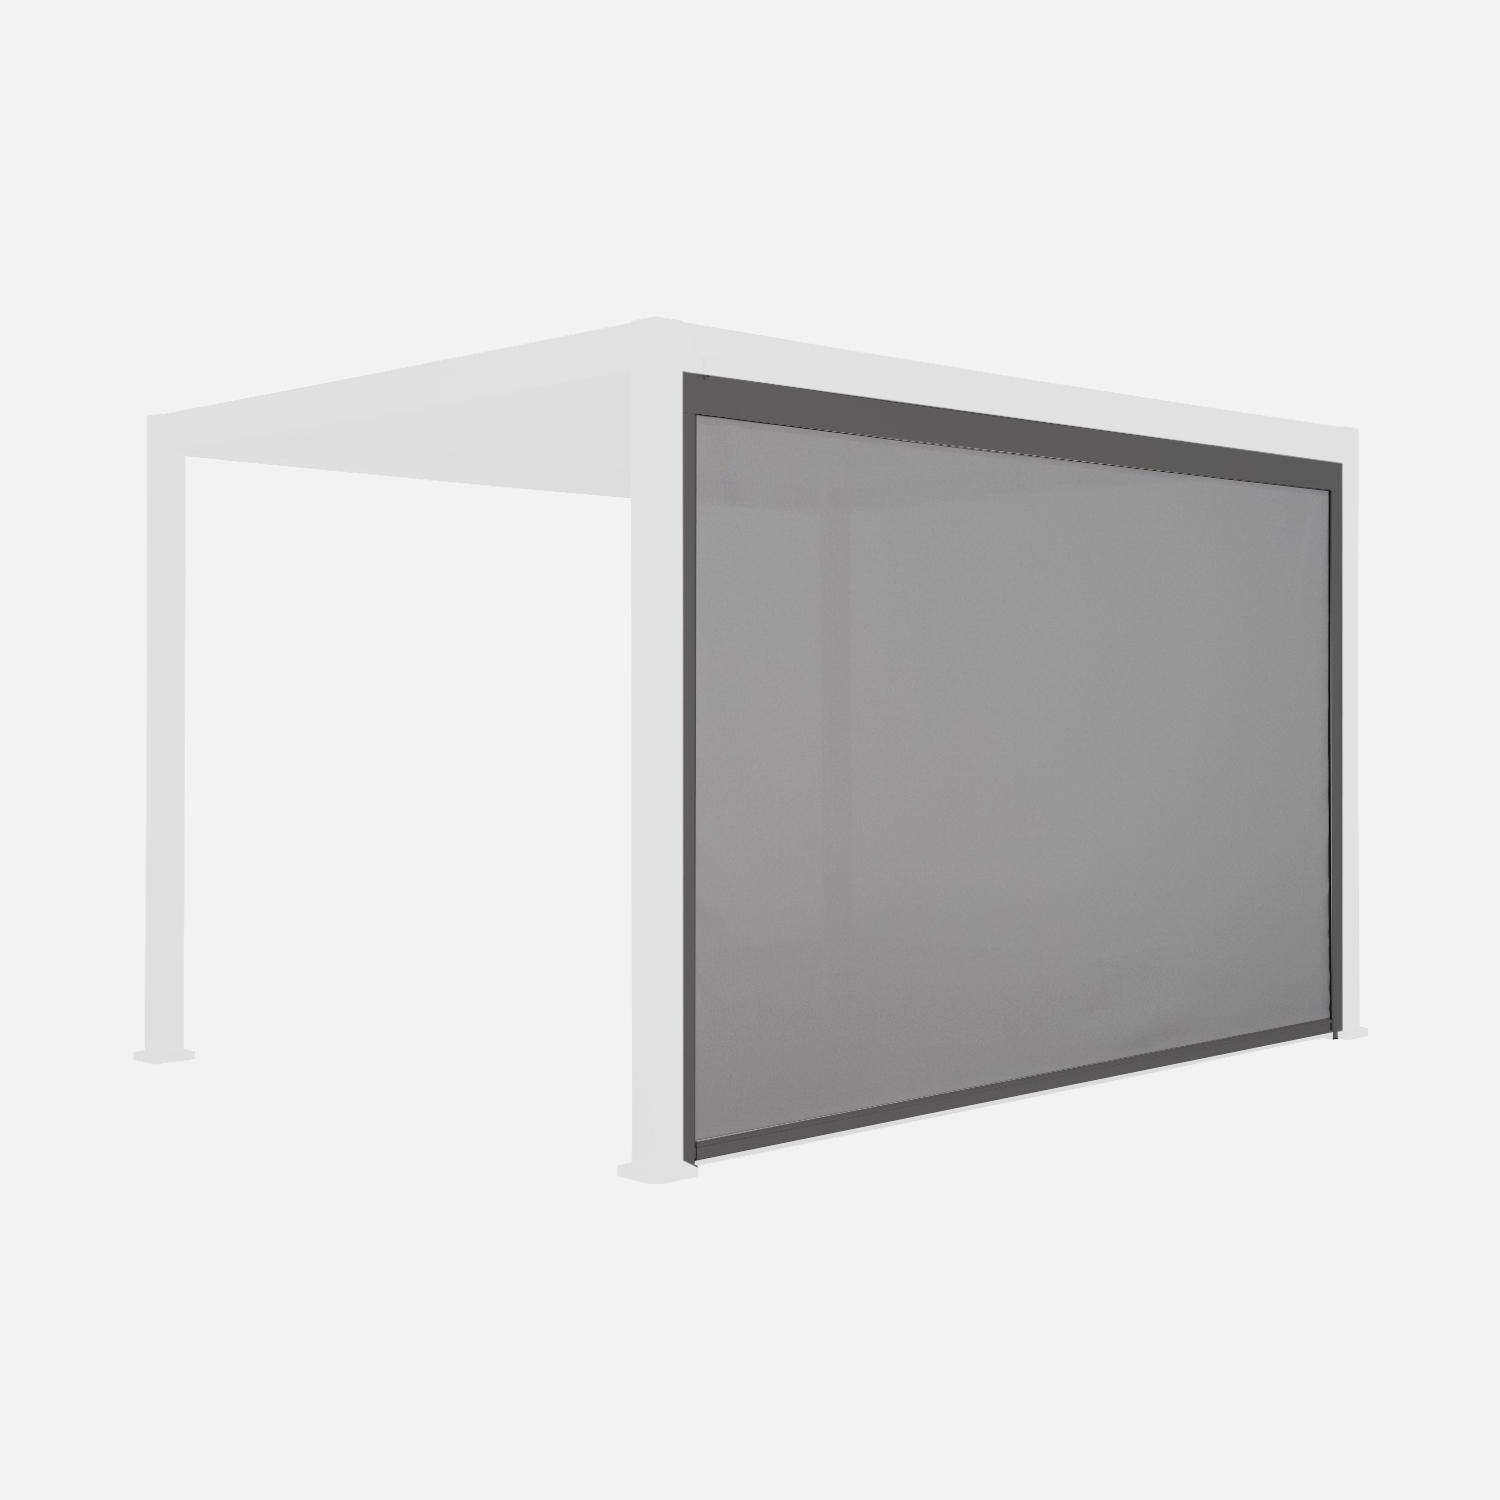 Store gris pour pergola bioclimatique – Triomphe – 3x4 m, aluminium et textilène Photo2